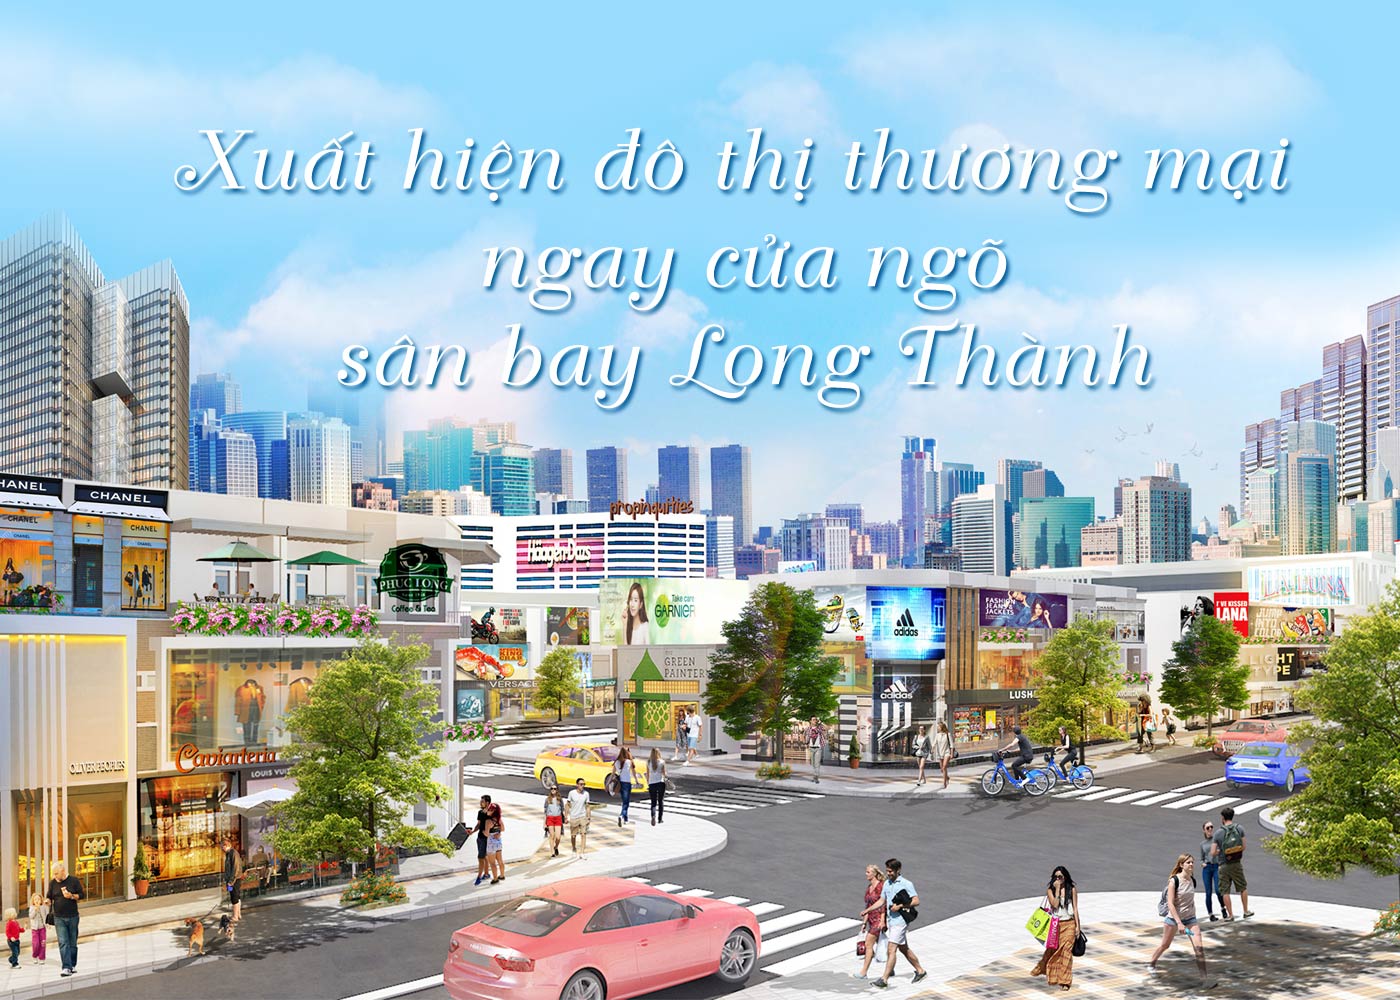 Xuất hiện đô thị thương mại ngay cửa ngõ sân bay Long Thành - Ảnh 1